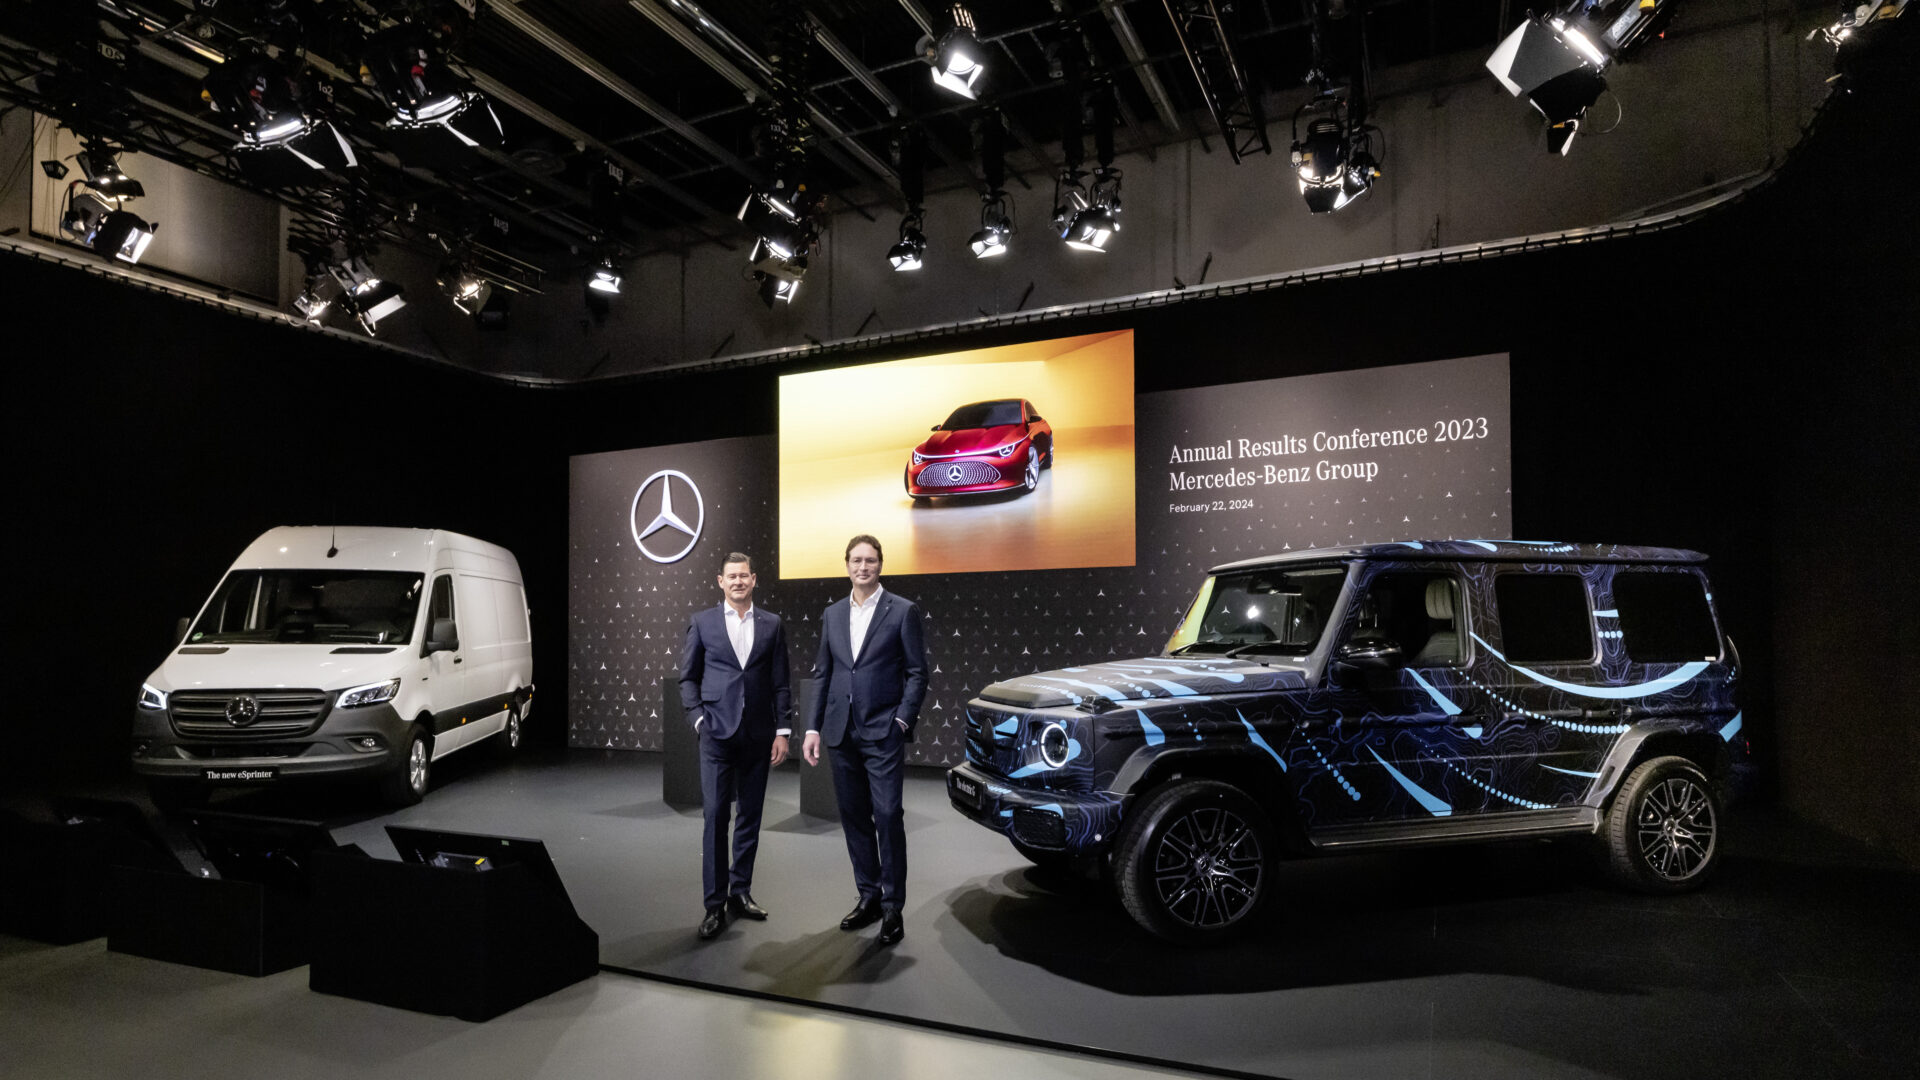 Mercedes-Benz: Anpassung an die Marktrealität trotz “Electric Only” Vision